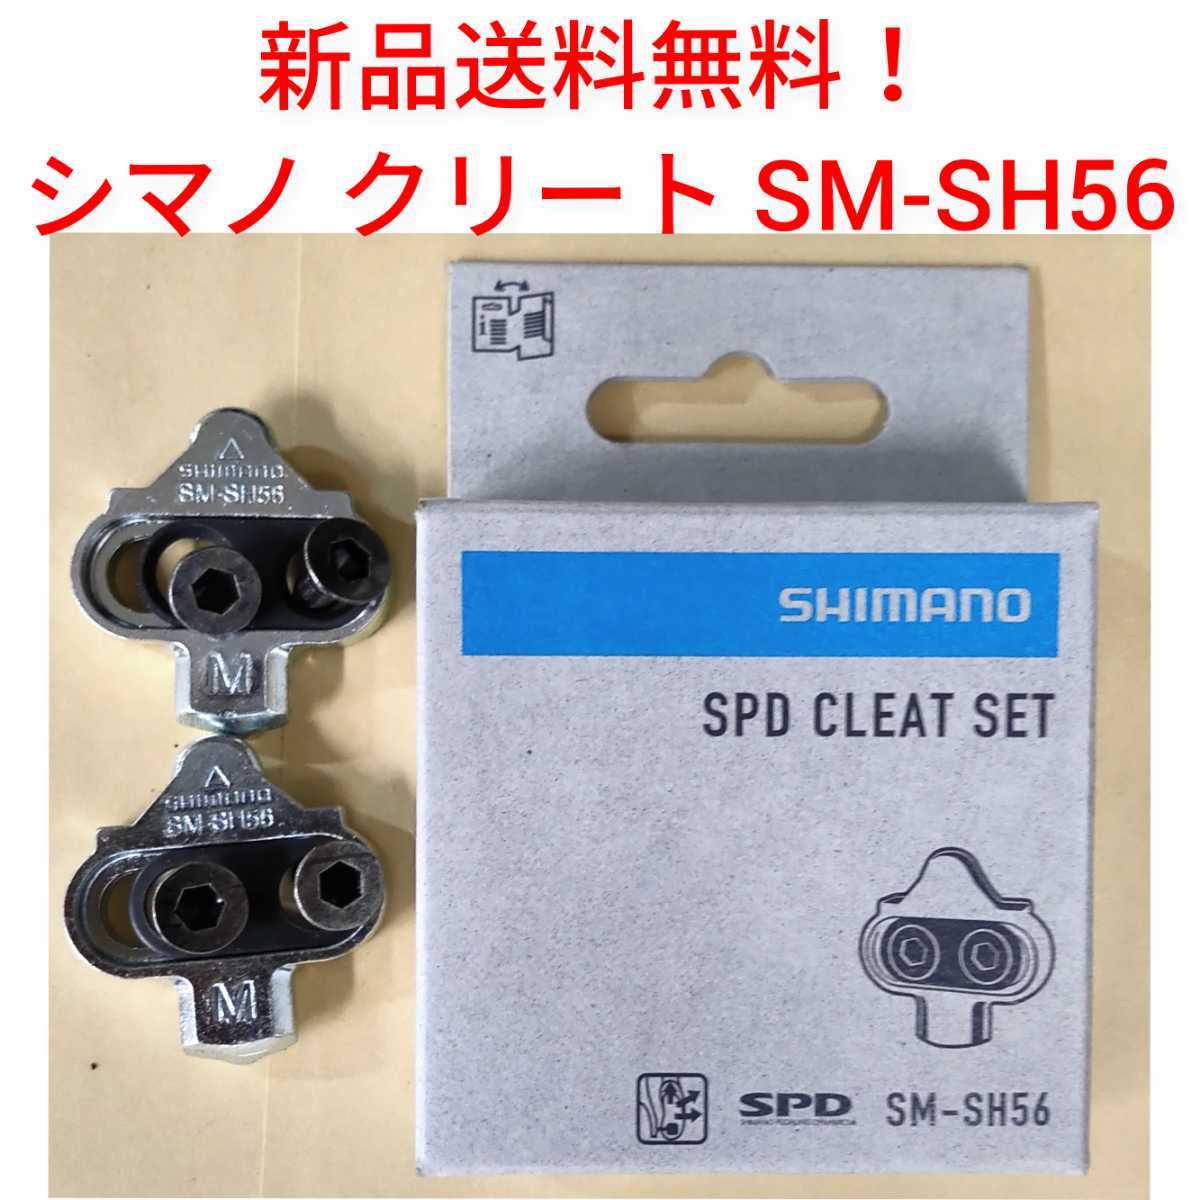 【新品送料無料】 クリートセット シマノ SM-SH56 クリートセット SHIMANO 自転車  SPD CLEAT SET マルチモード SMSH56 の画像1